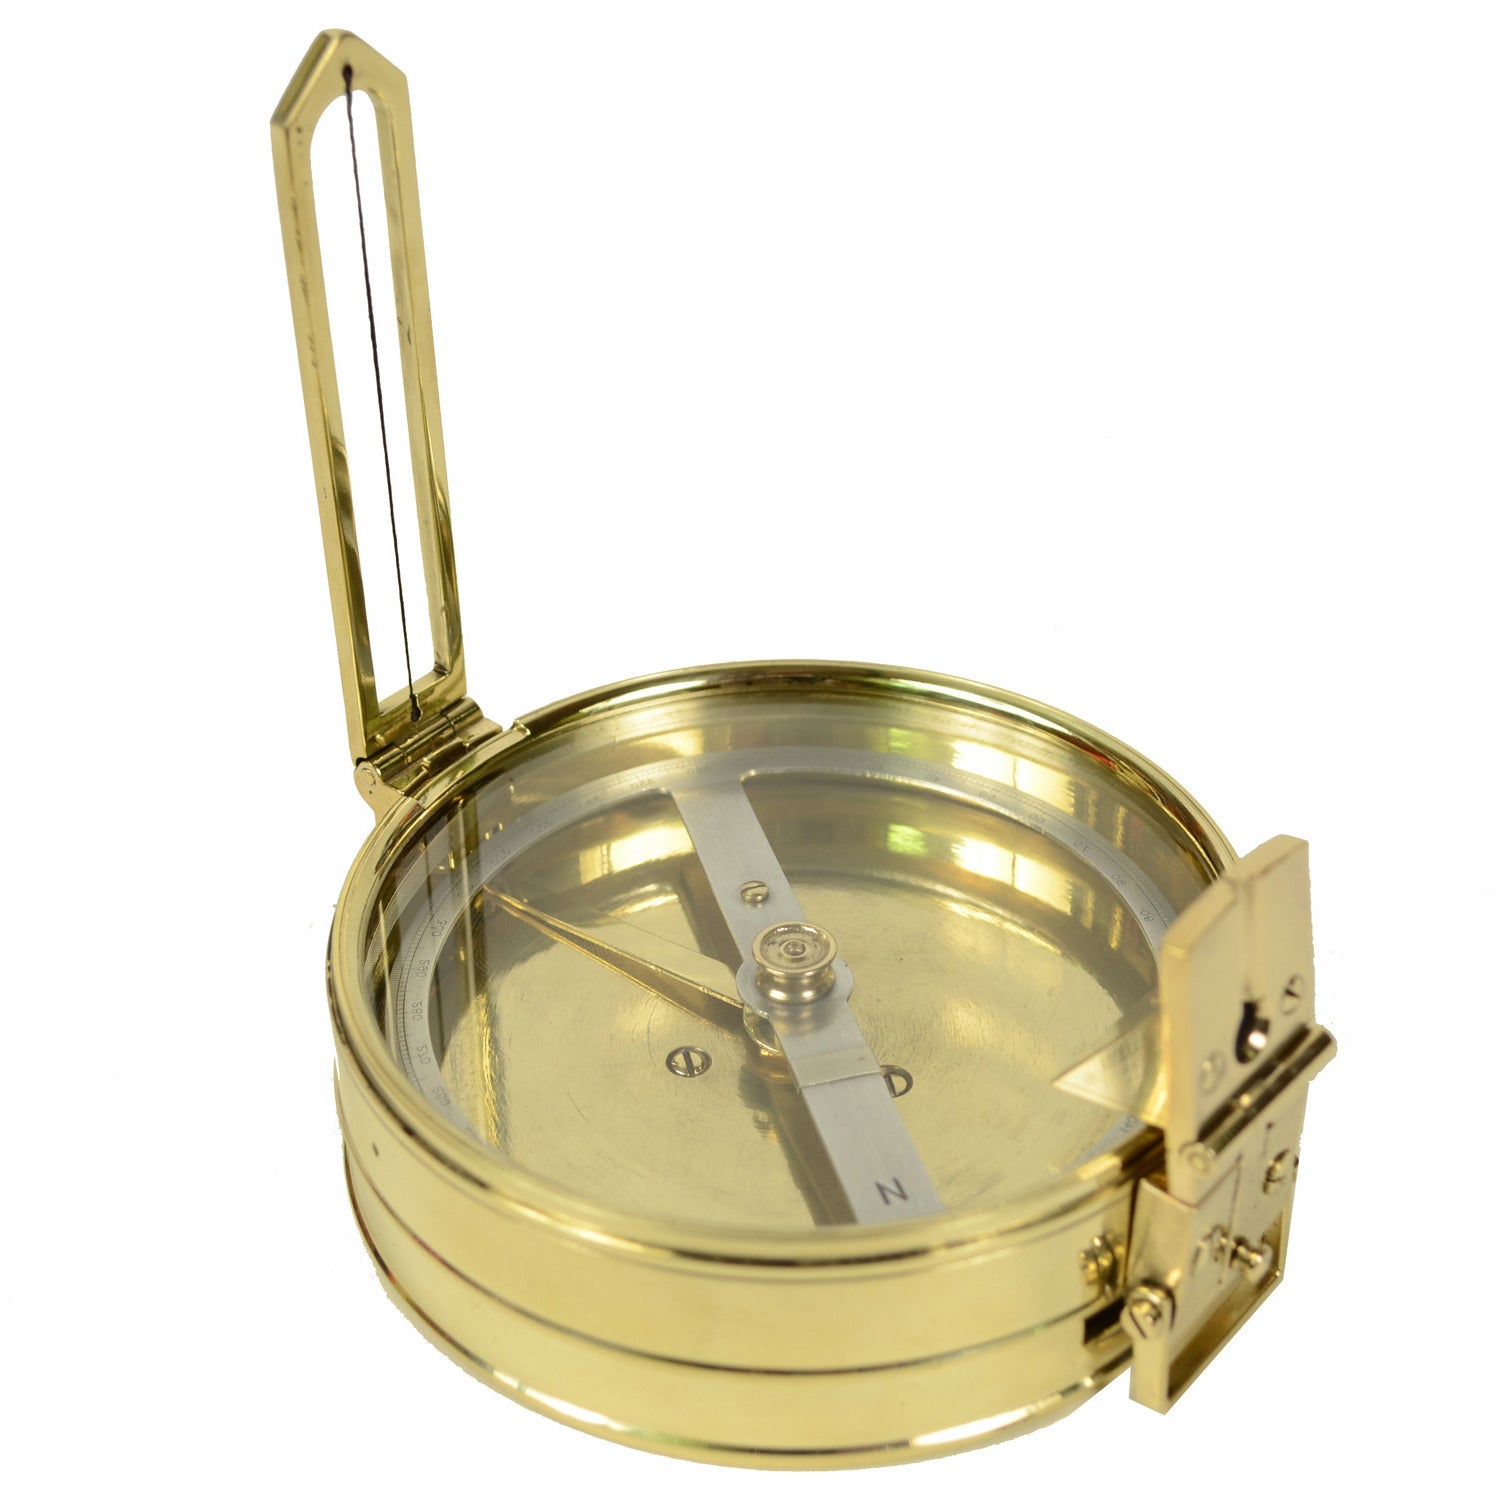 Survey Compass, made of Brass, 1932